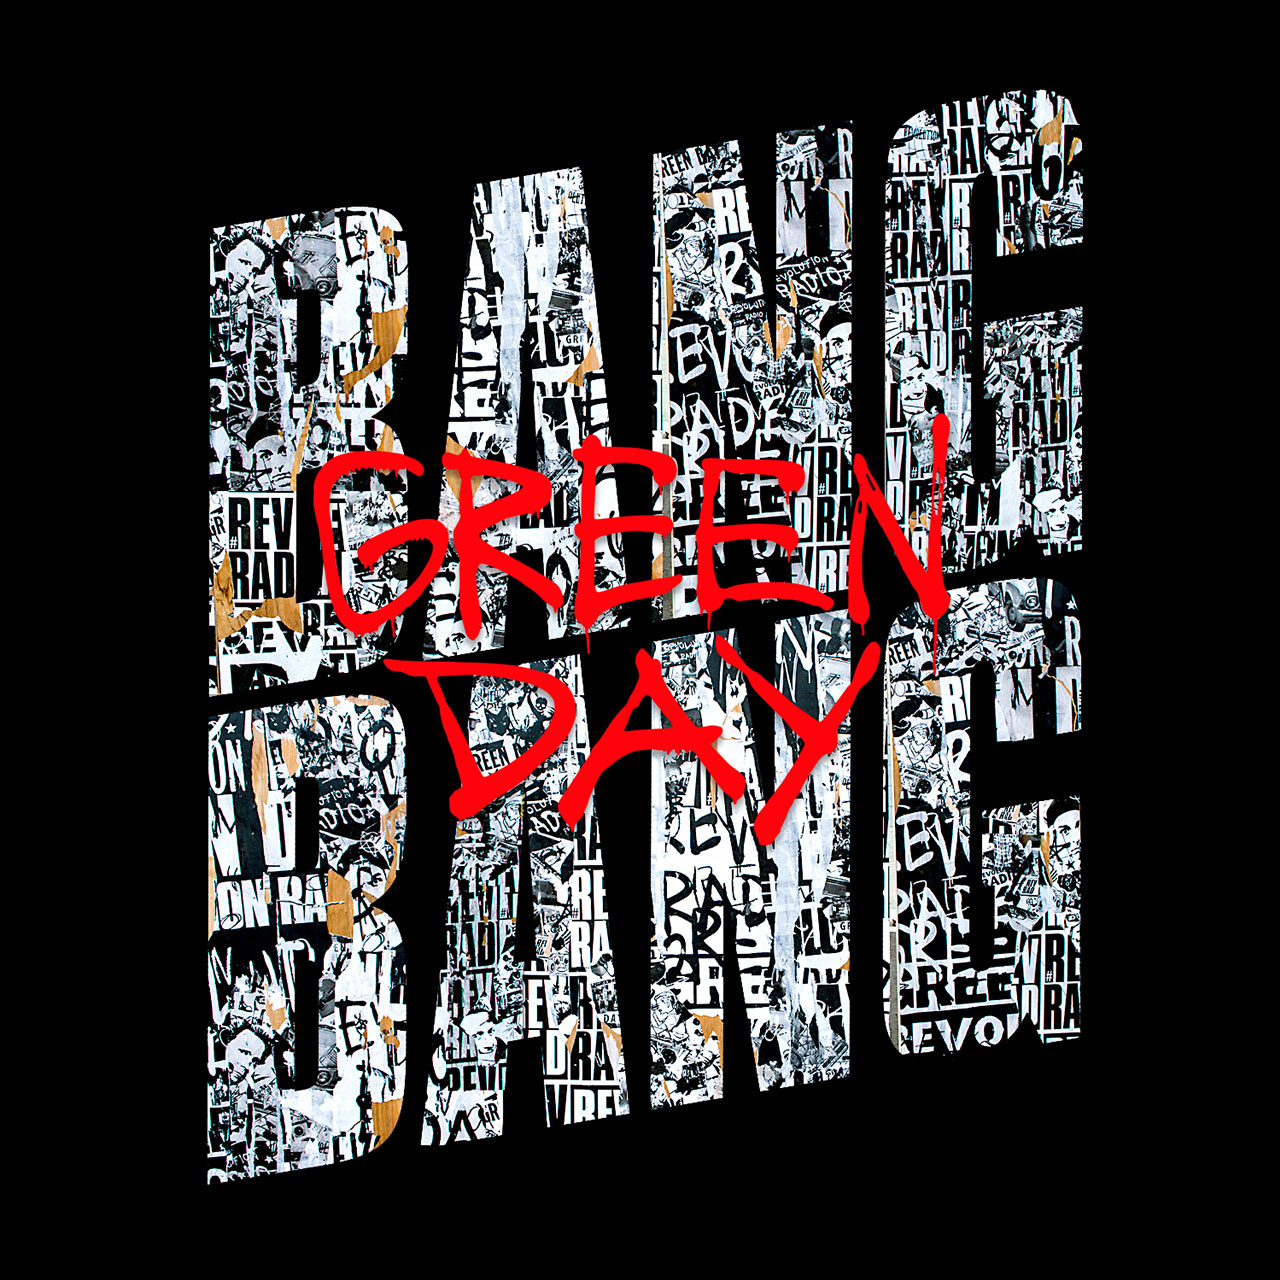 Green Day Bang Bang